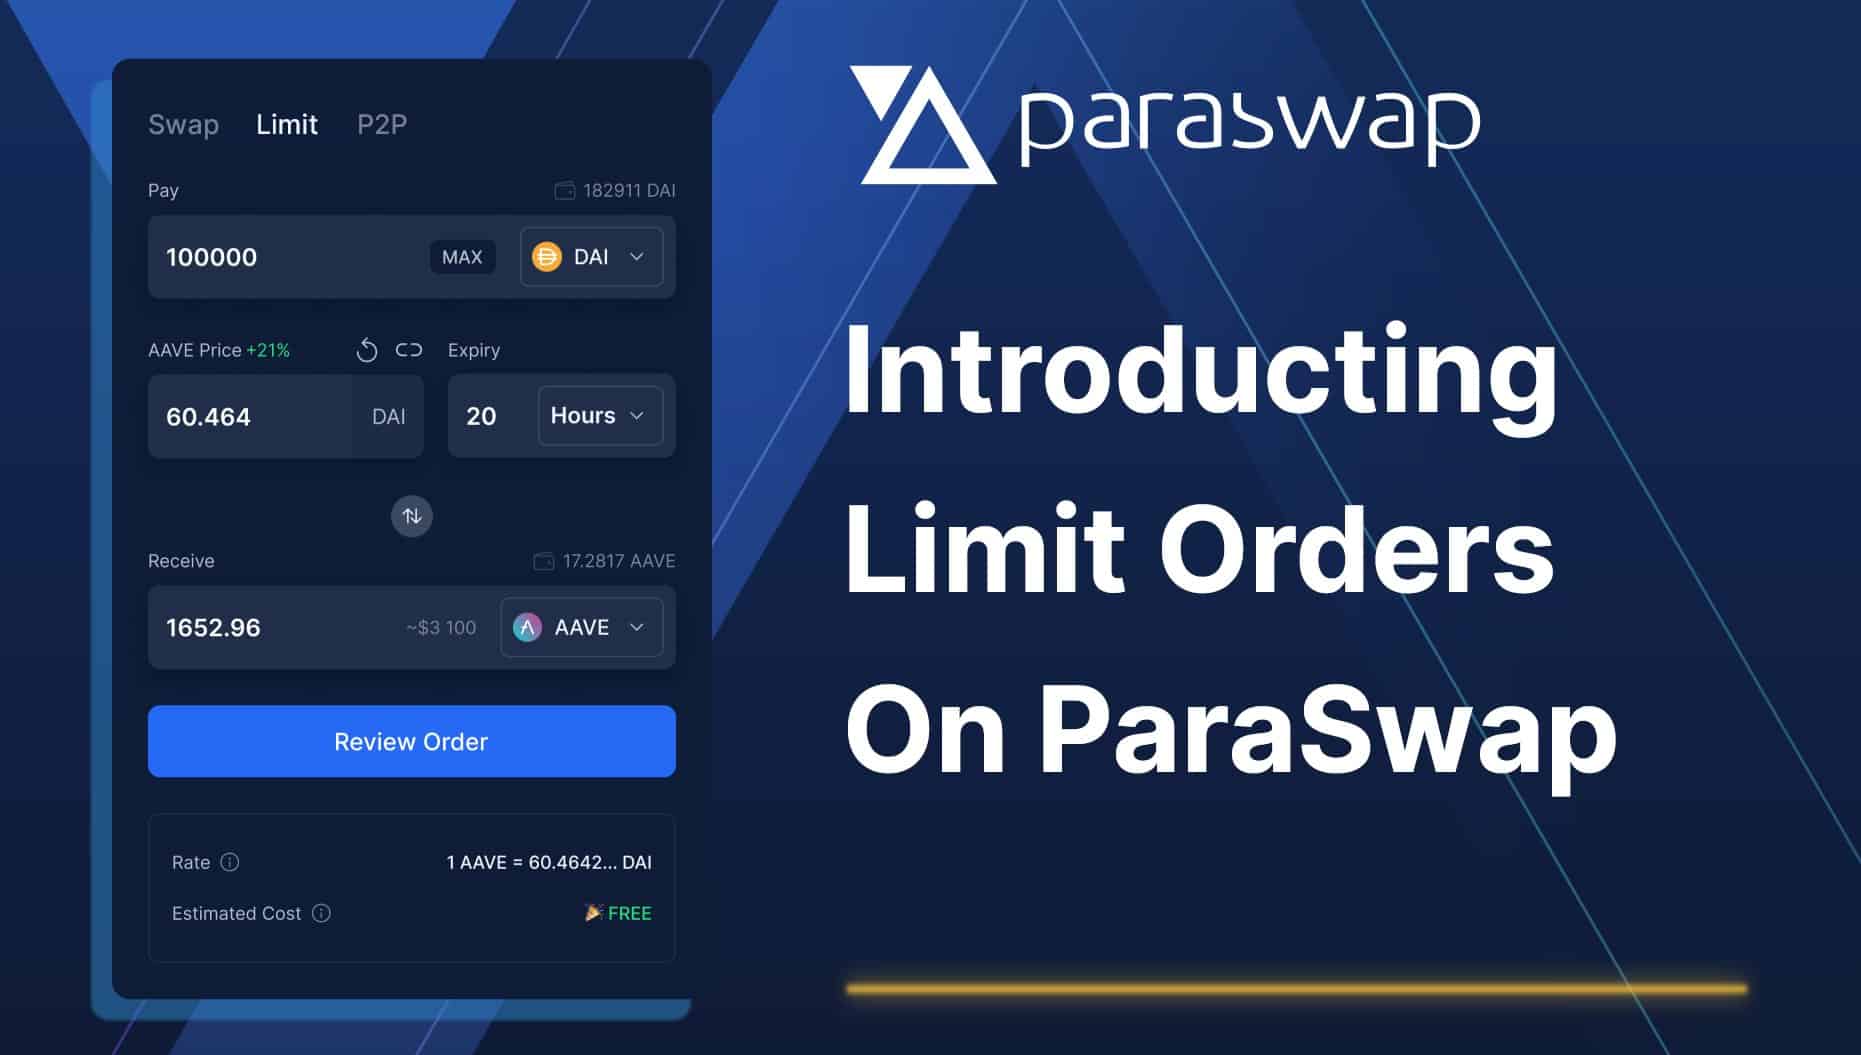 Les ordres limites sont actifs sur Paraswap